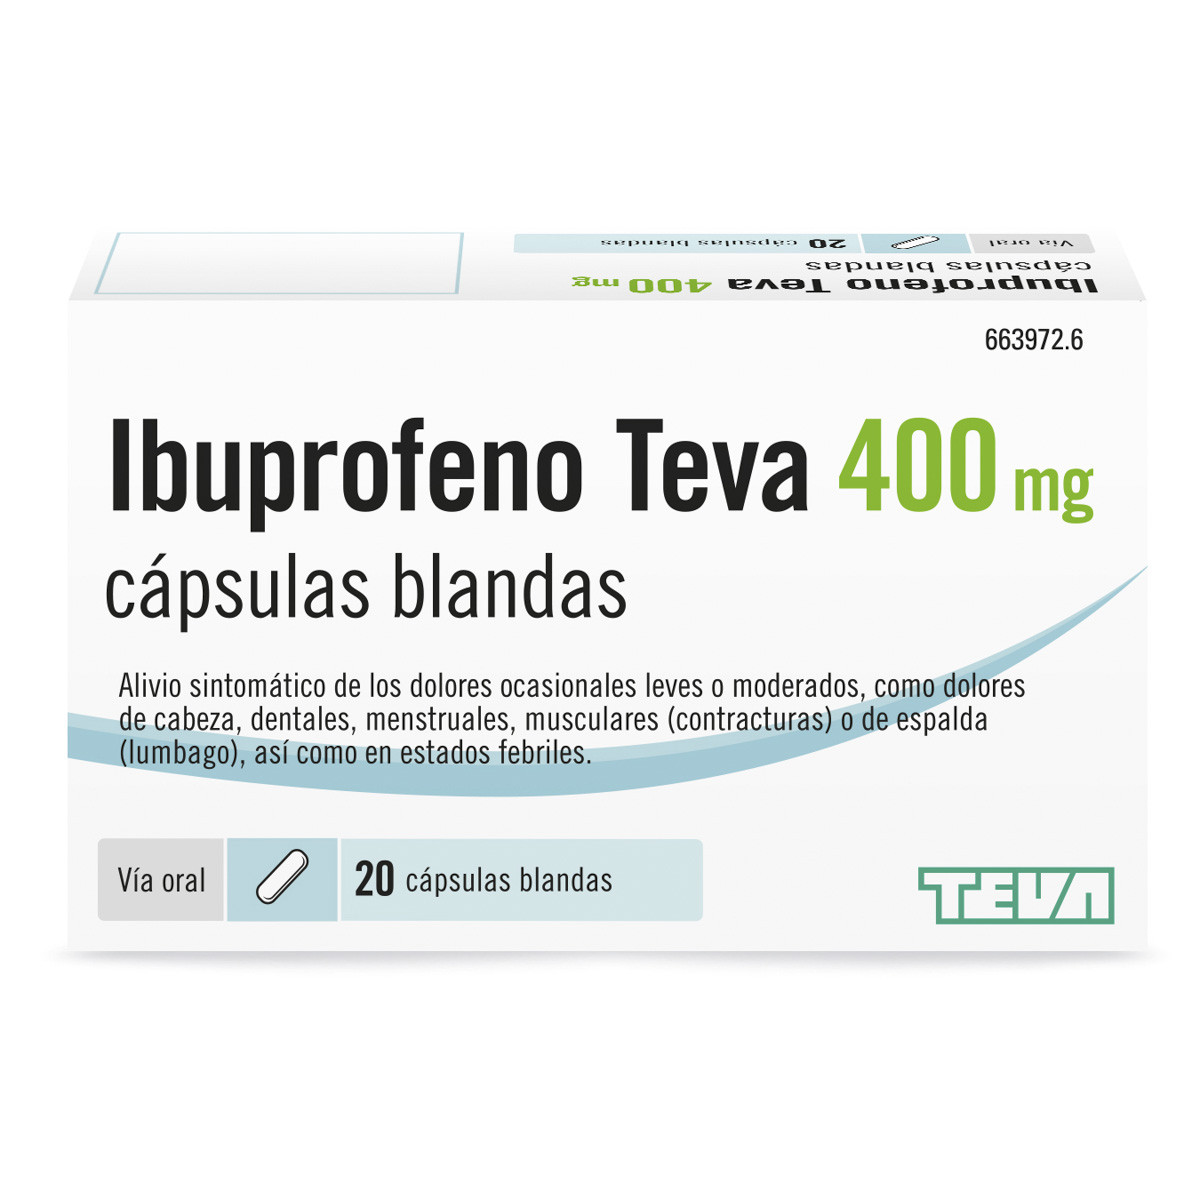 Imagen de Ibuprofeno Teva 400 mg Cápsulas blandas
